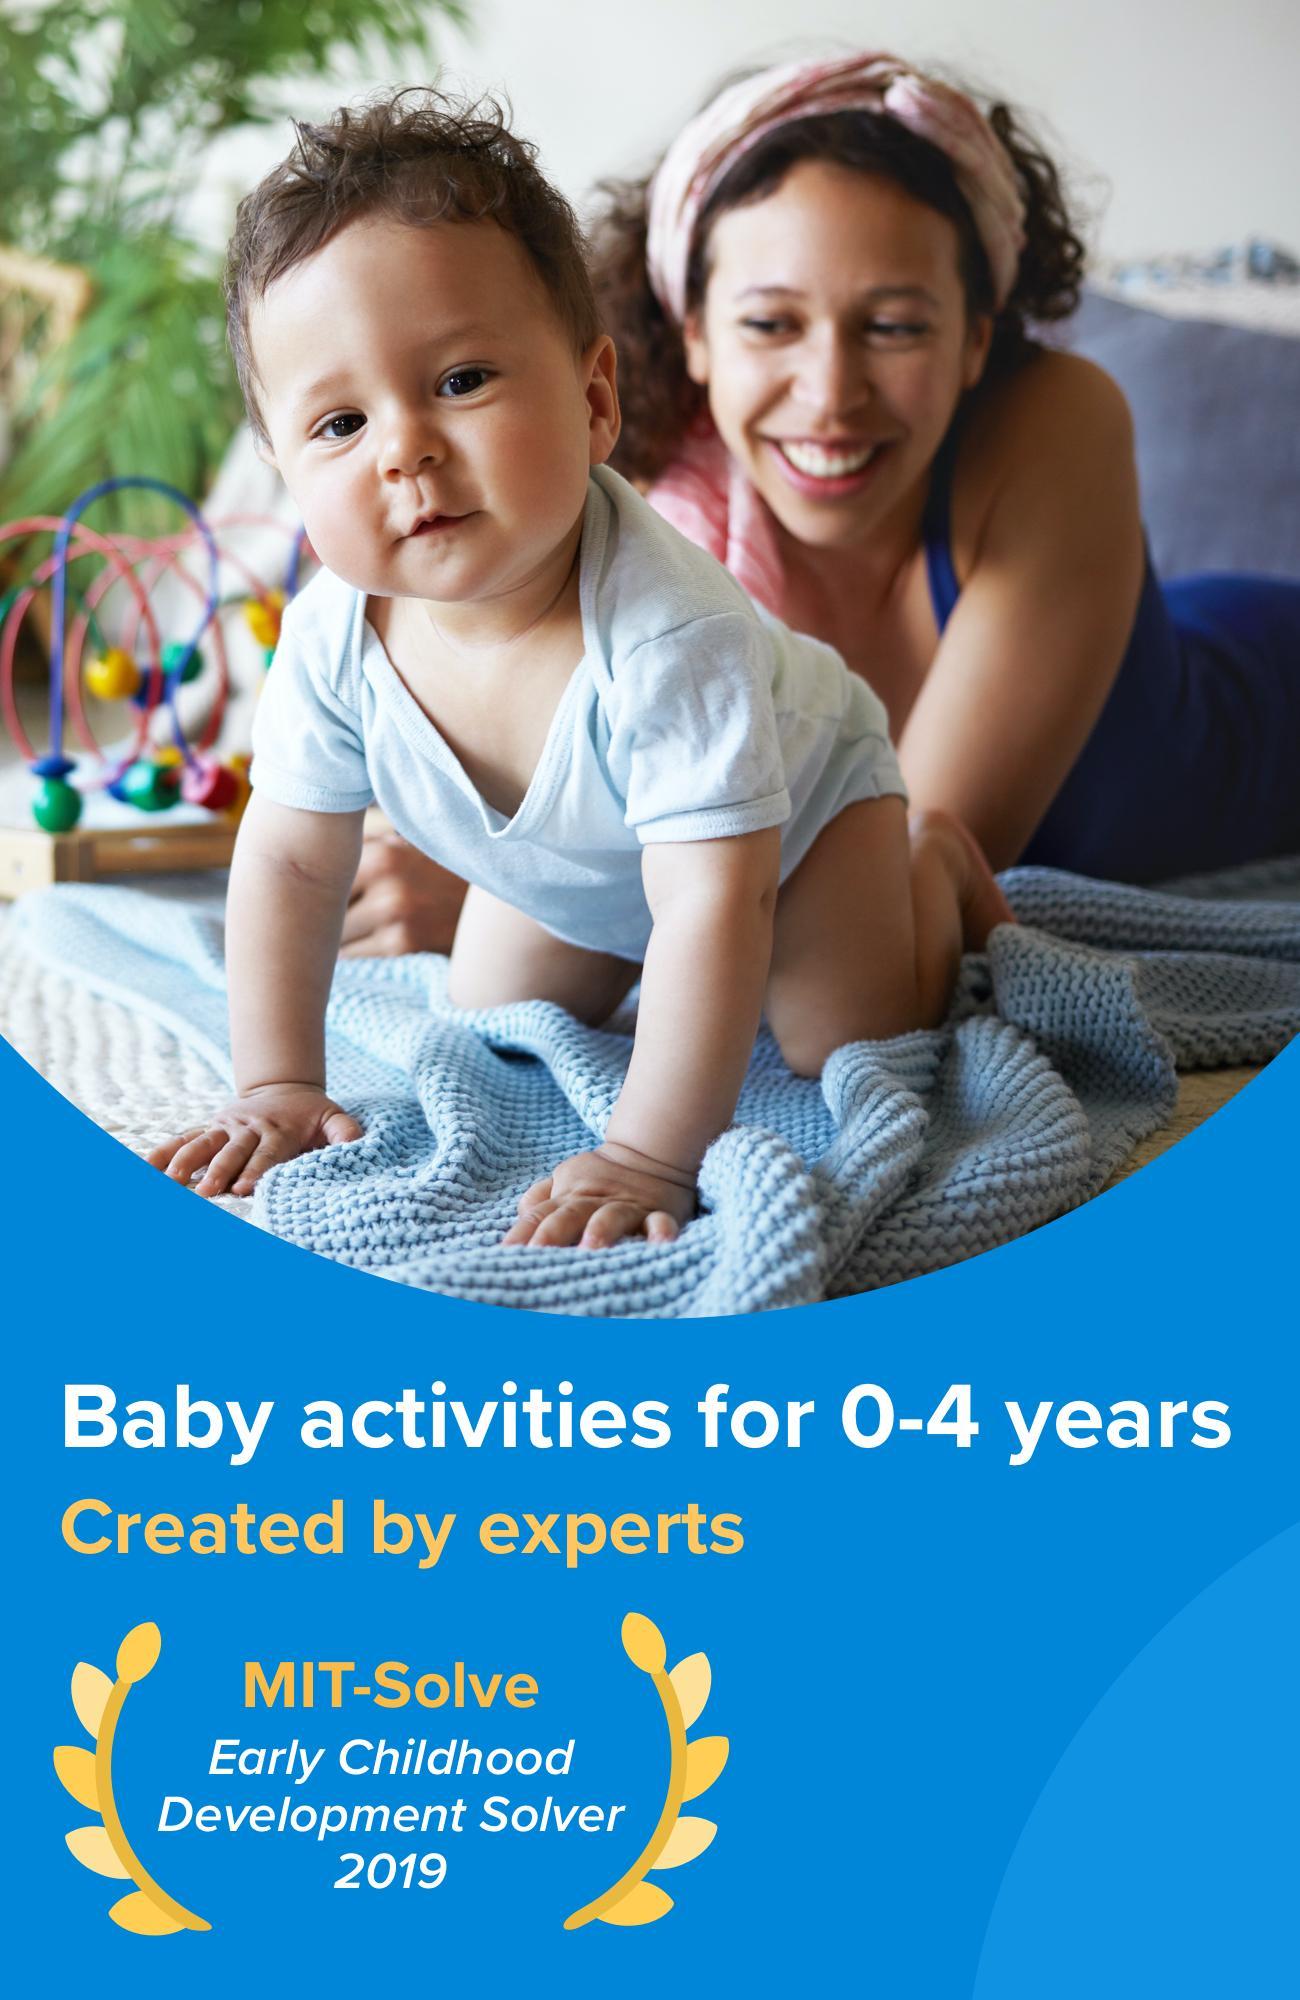 Kinedu Baby Developmental Activities & Milestones 1.37.1 Screenshot 9